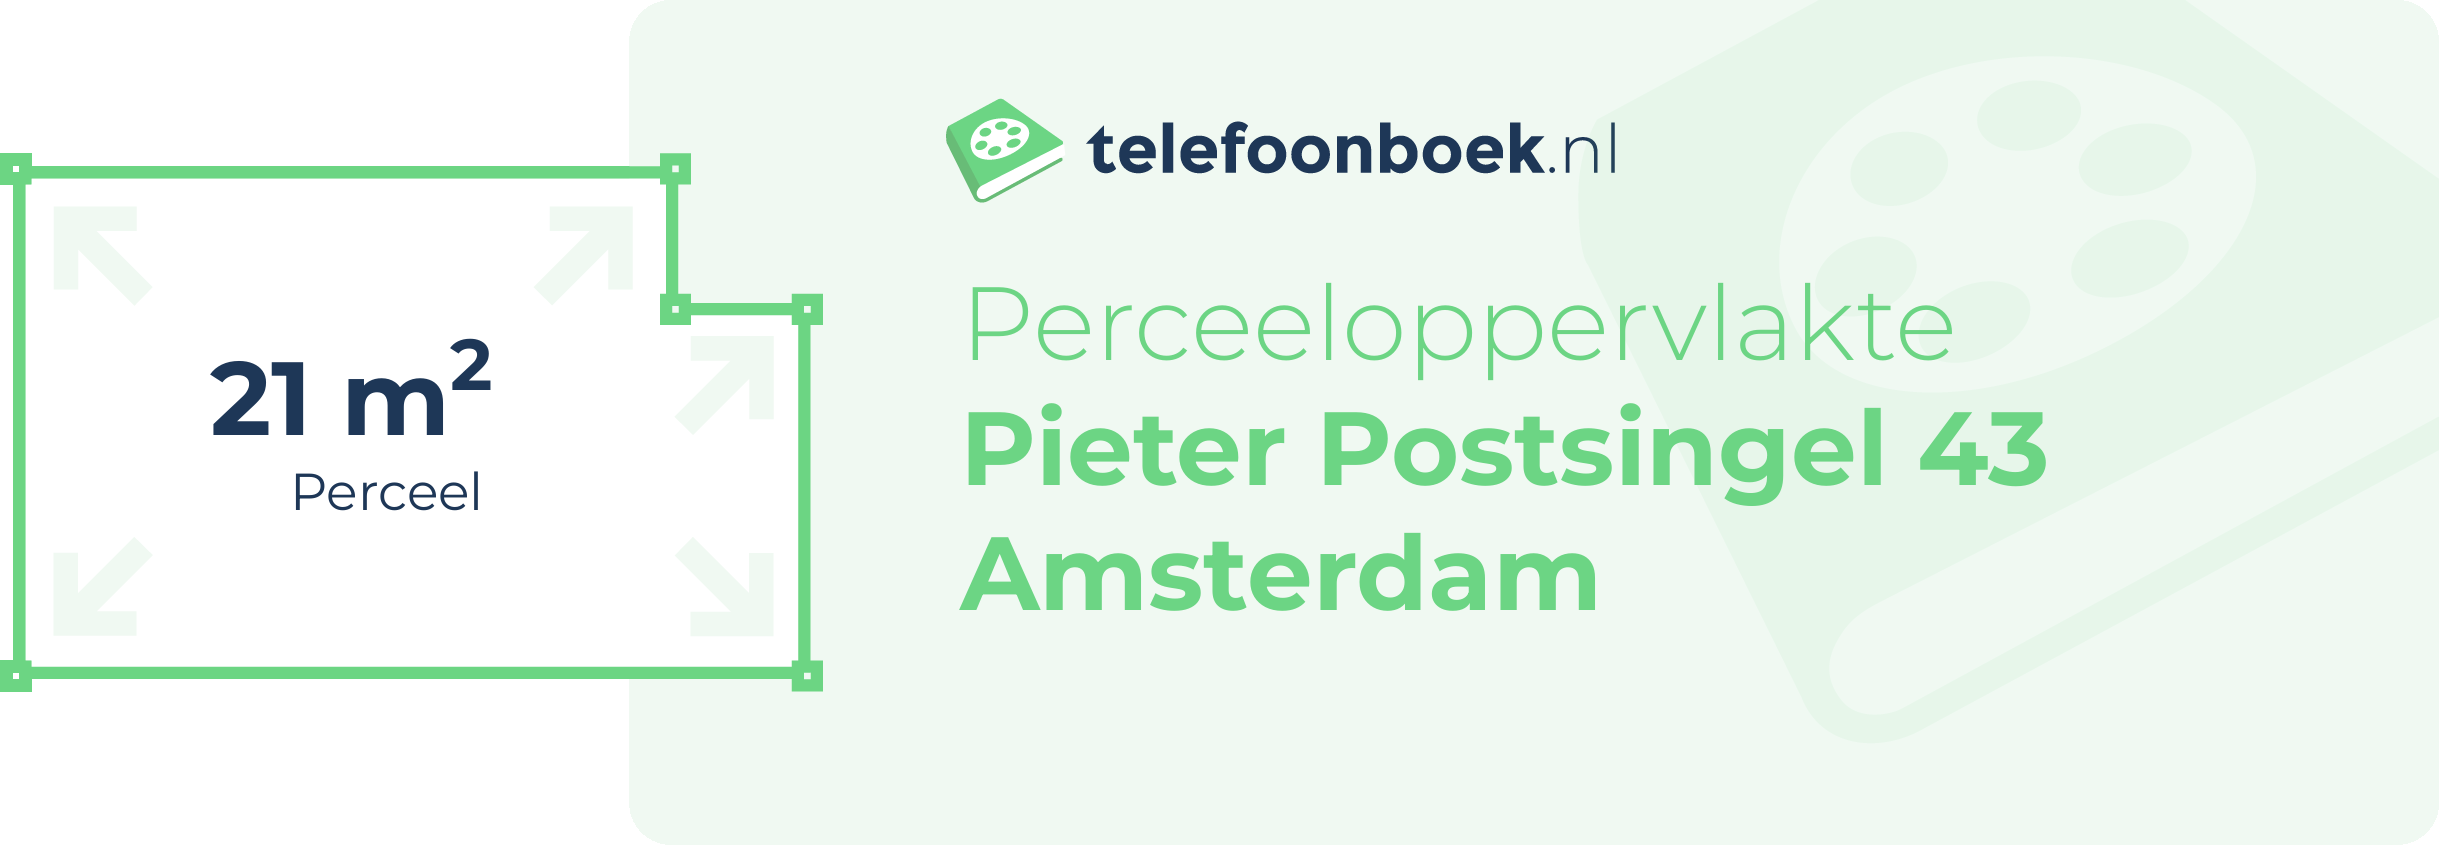 Perceeloppervlakte Pieter Postsingel 43 Amsterdam